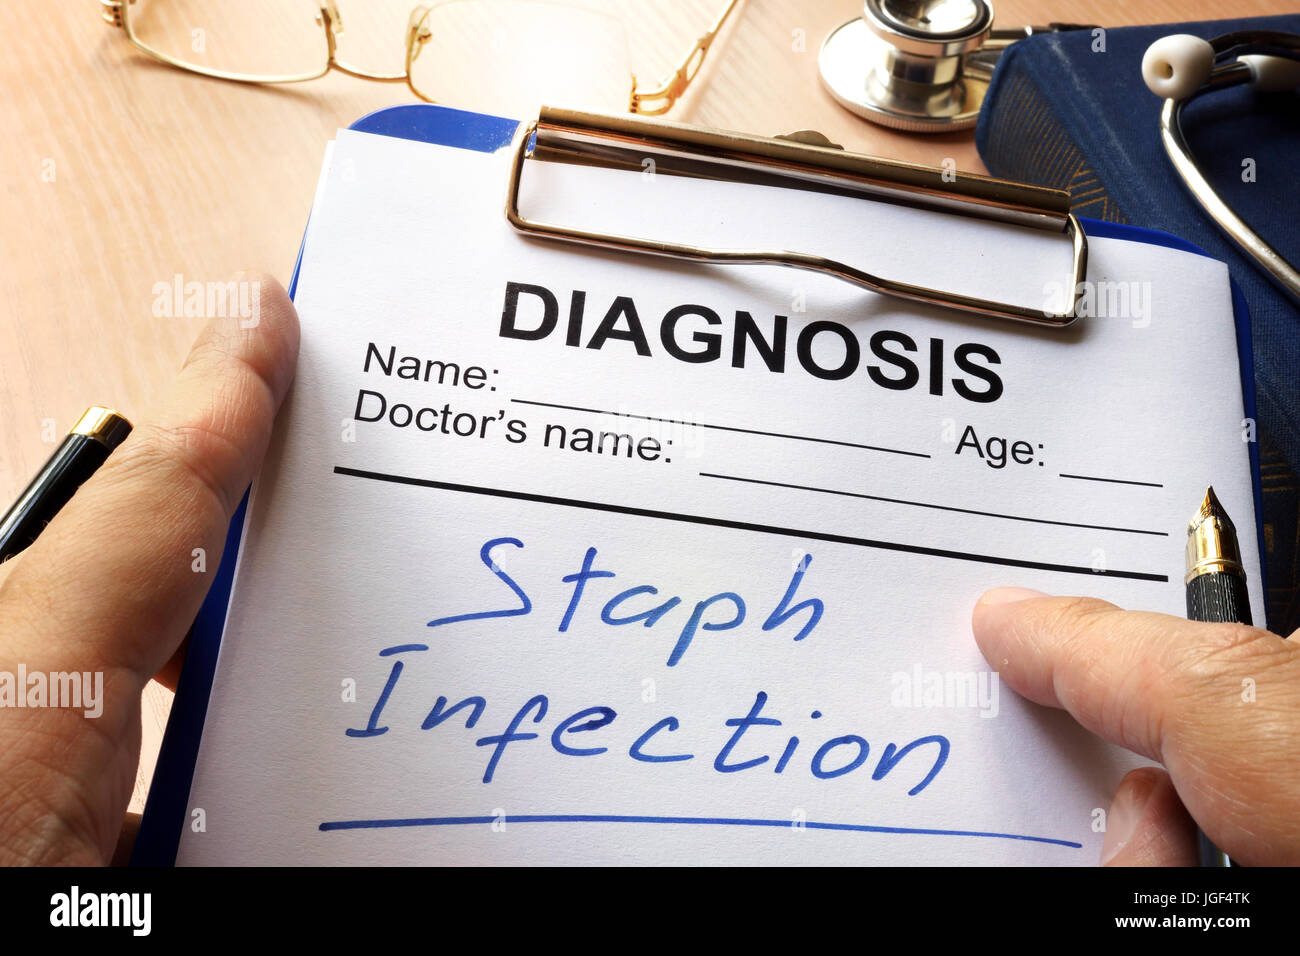 Staphylokokken-Infektion in einem Diagnose-Formular geschrieben. Stockfoto